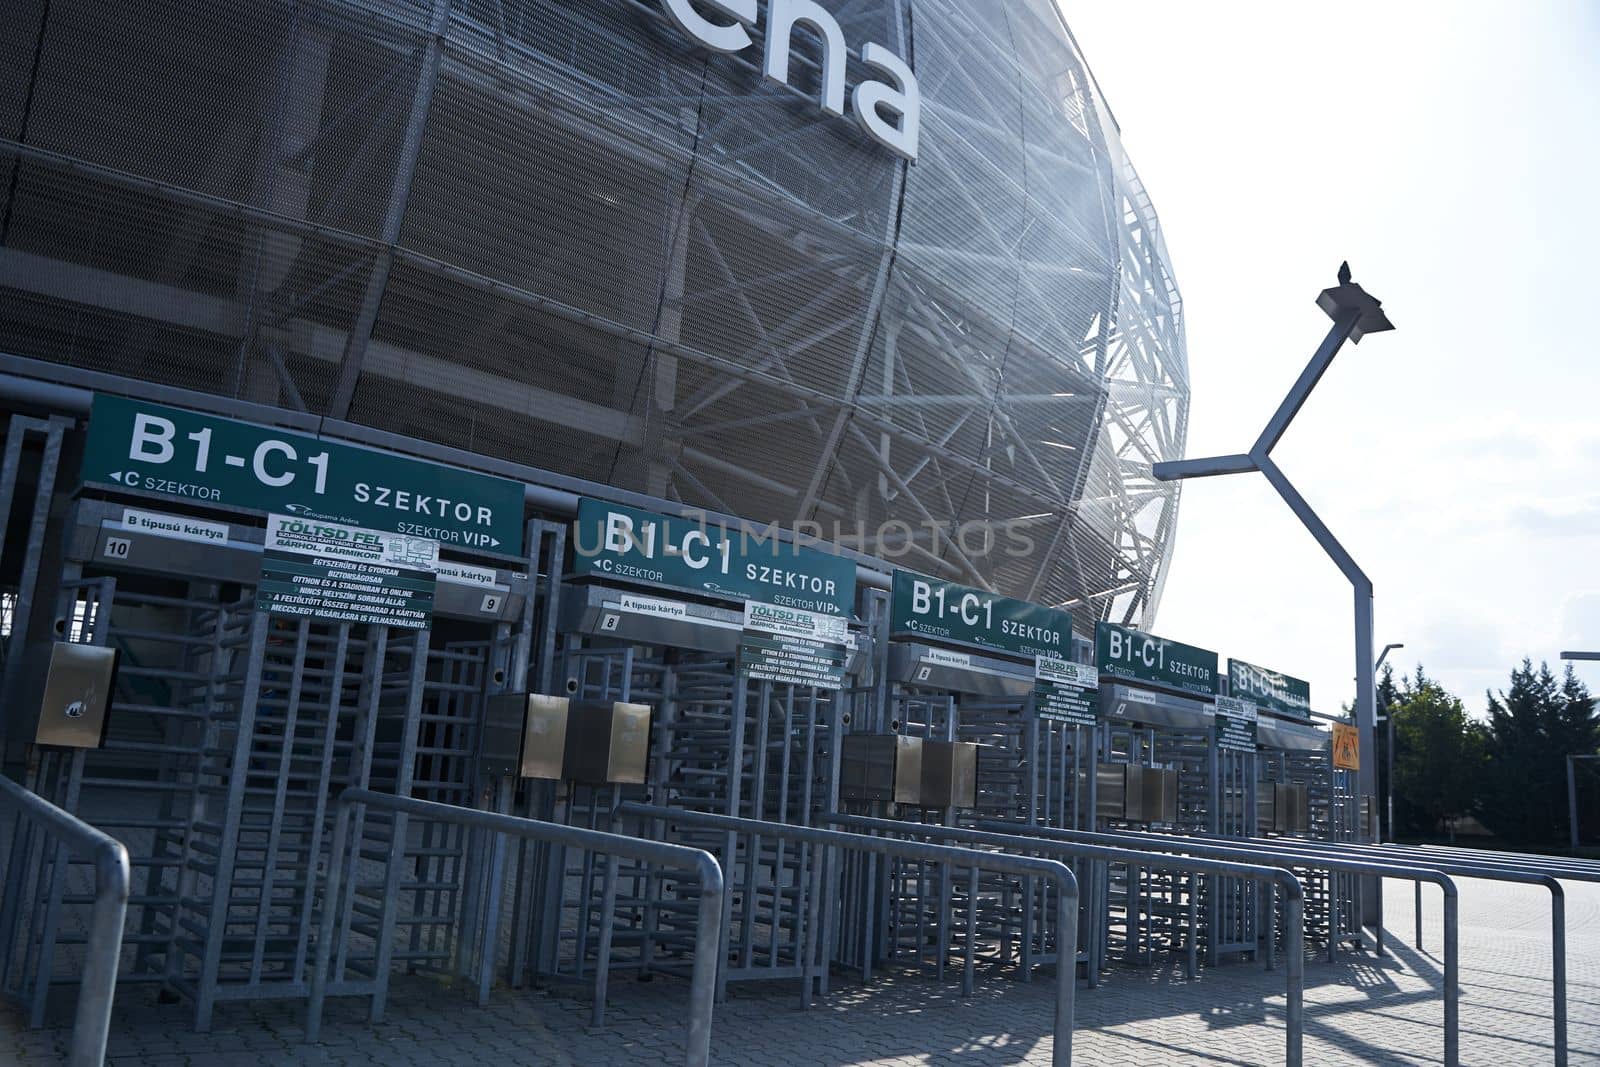 Groupama arena stadium in Budapest. The entrance gate to the stadium. Budapest, Hungary - 08.25.2022